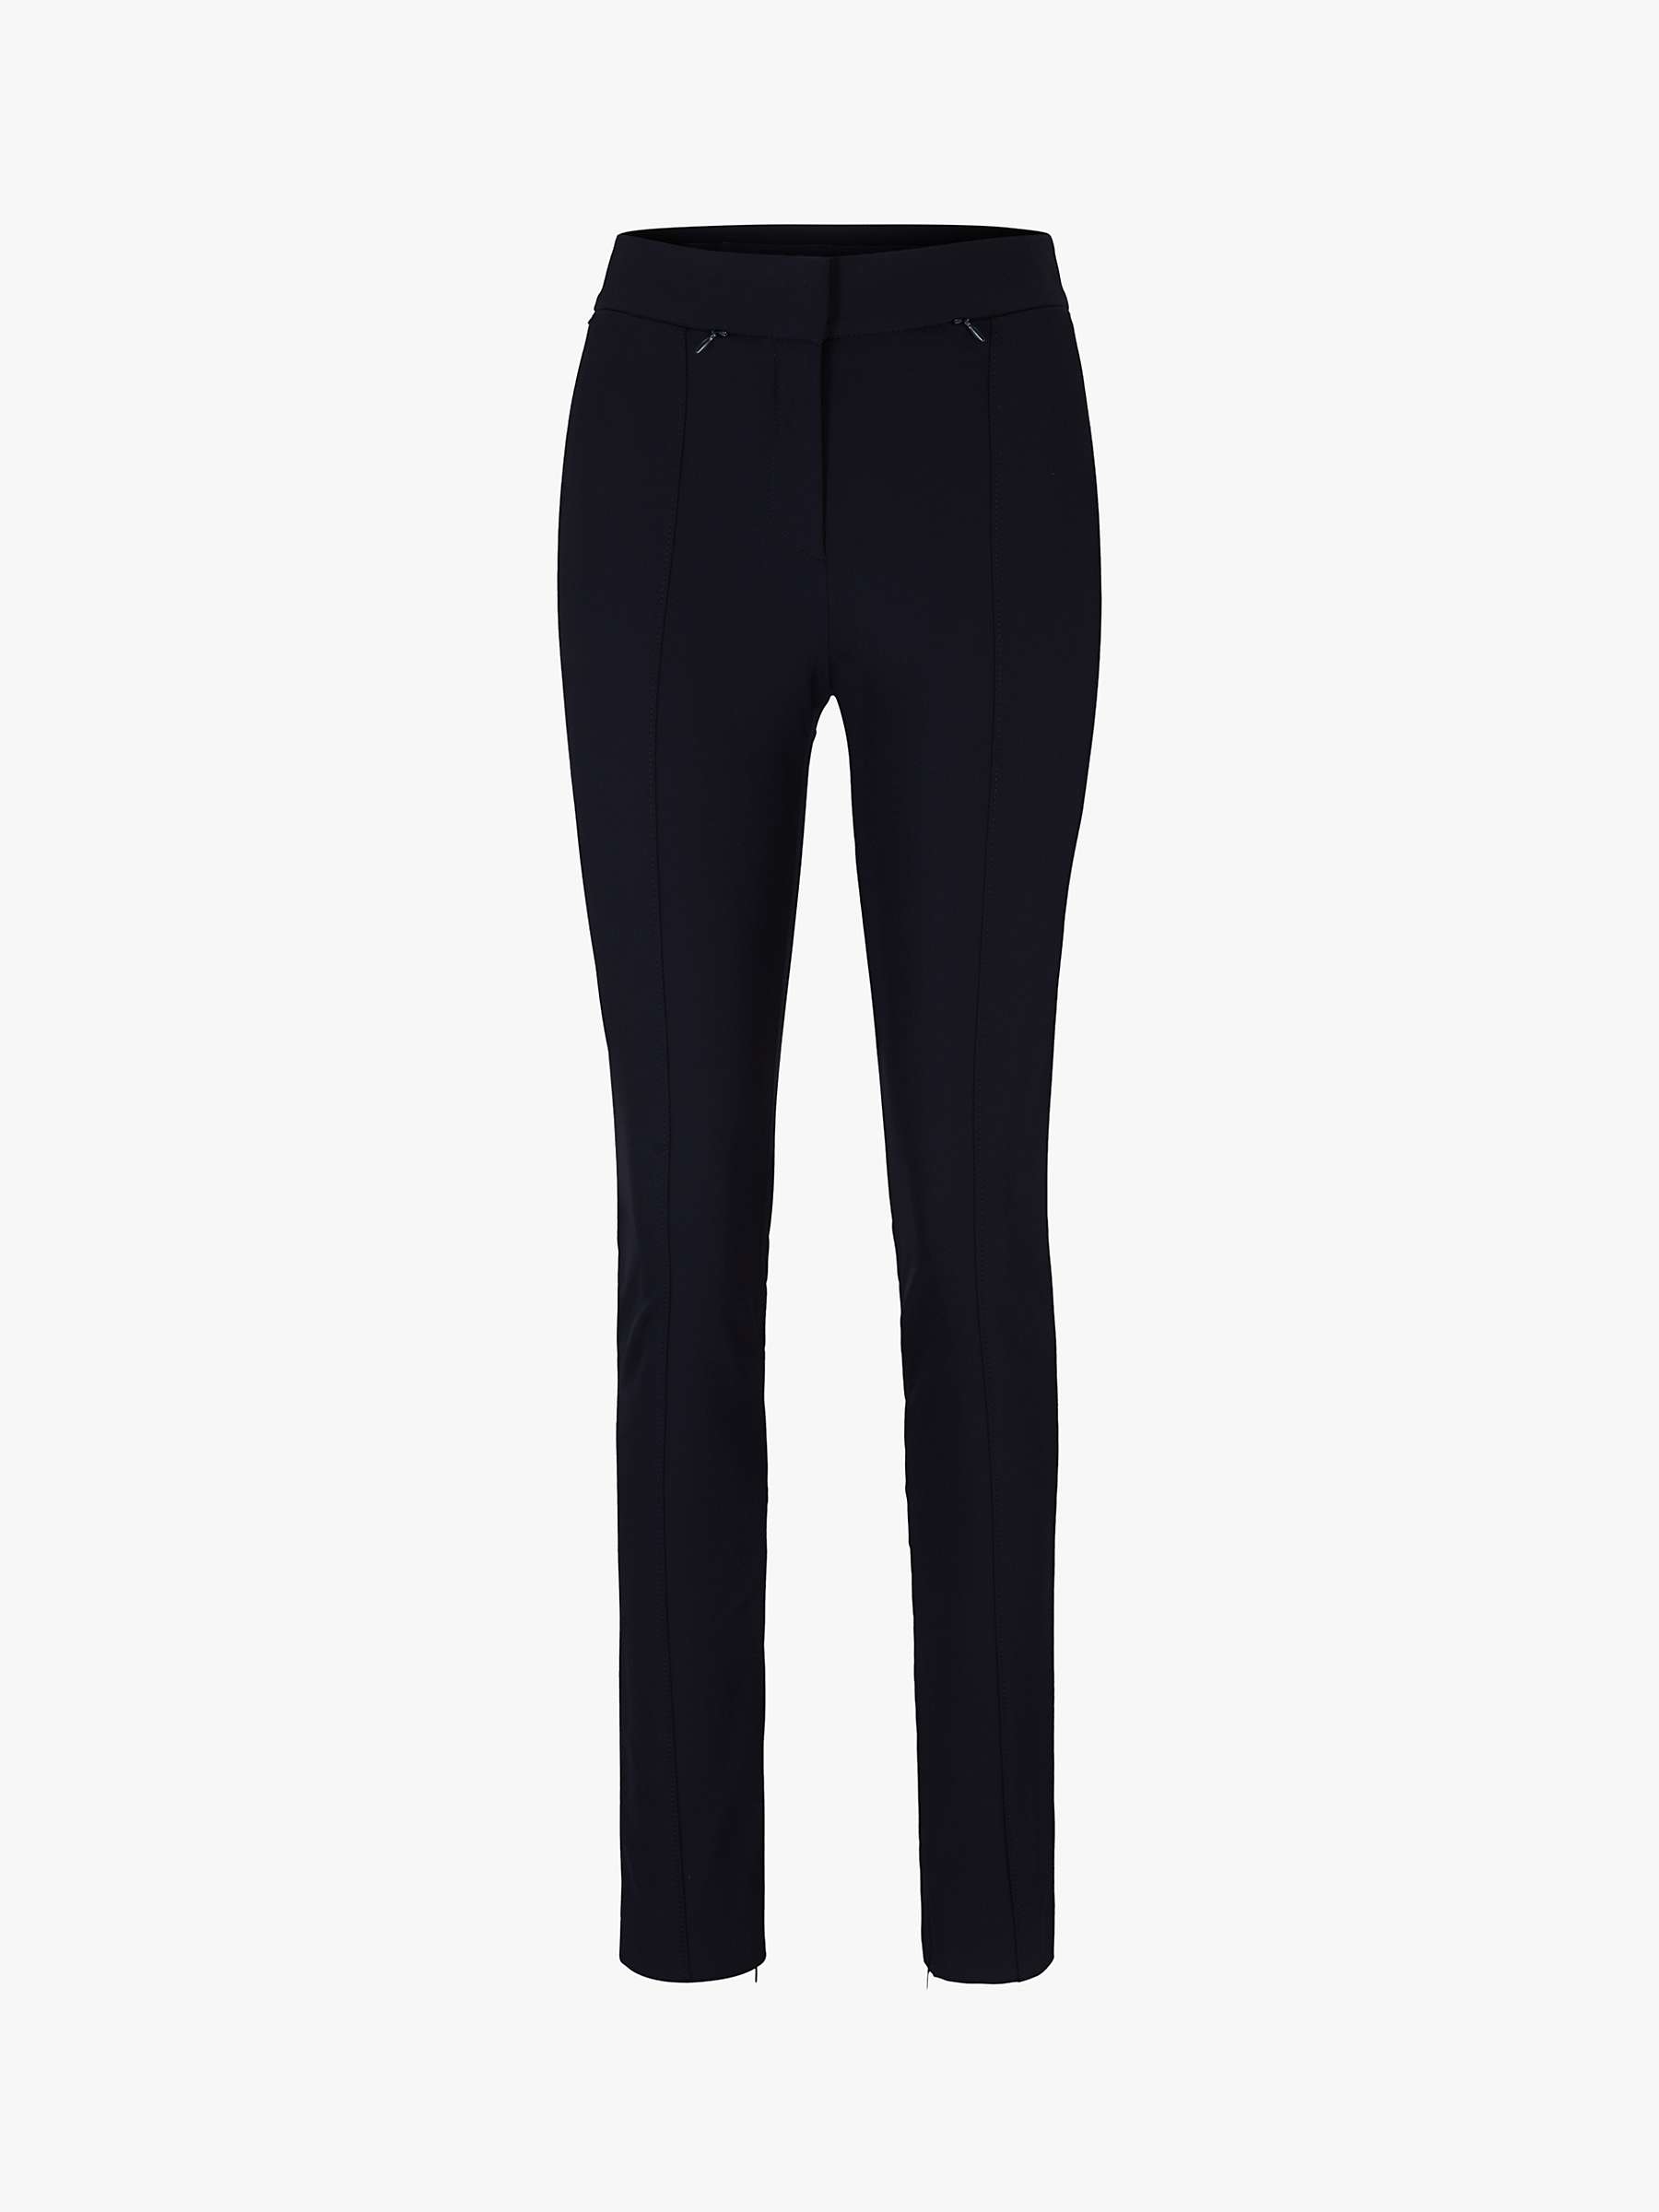 Buy BOSS Tukeva Zip Hem Slim Leg Trousers, Navy Online at johnlewis.com